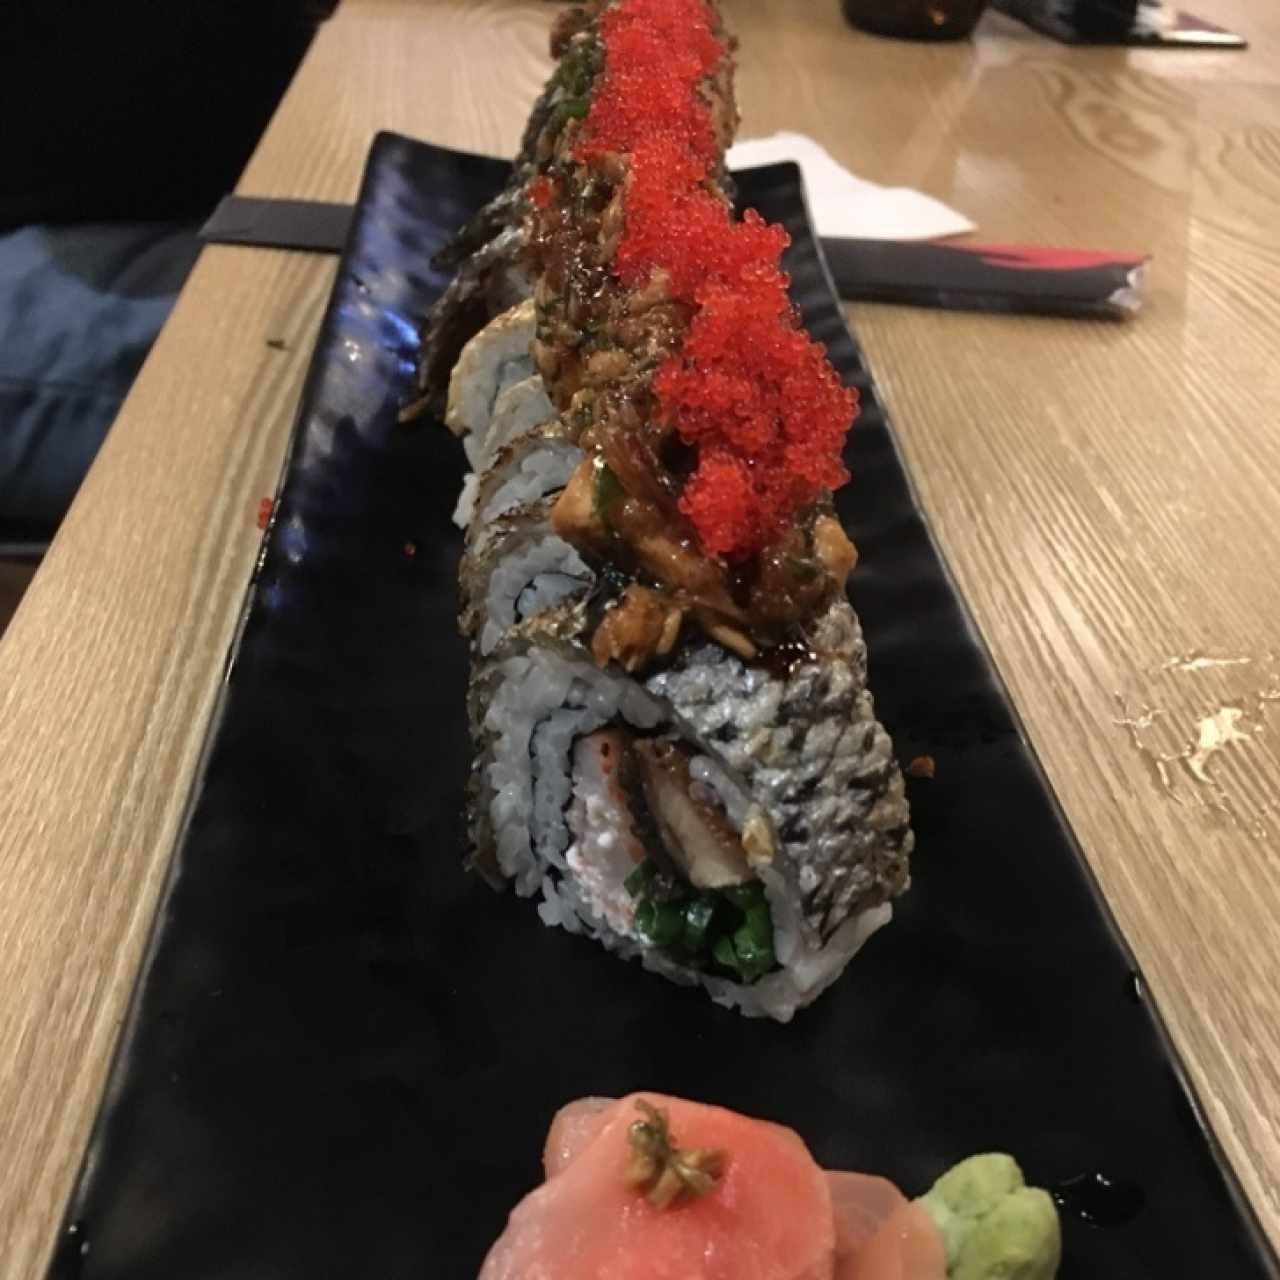 Sushi rolls - Unagi dragón